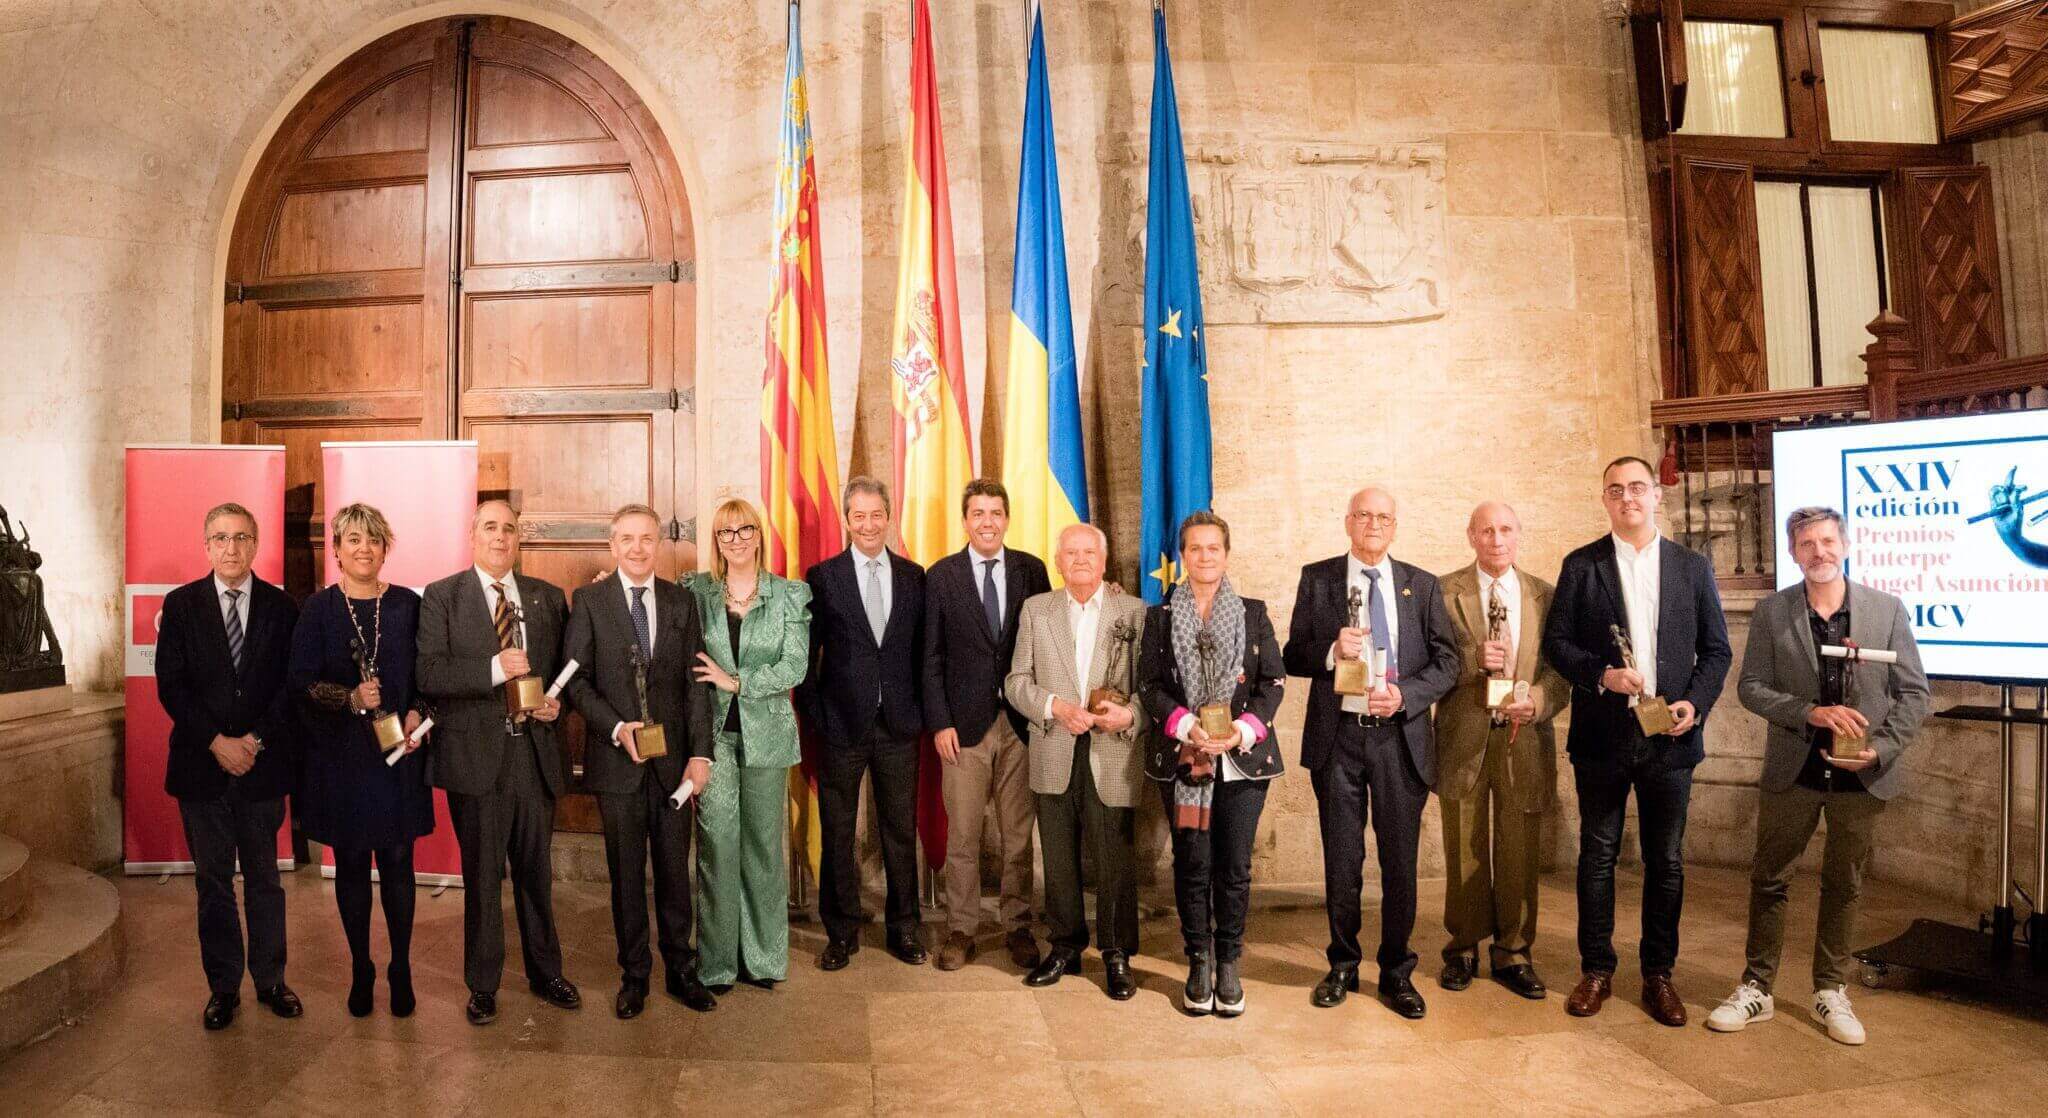 Foto 1 Los Premios Euterpe Angel Asuncion reciben el galardon de manos del President Carlos Mazon en el Palau de la Generalitat scaled 1